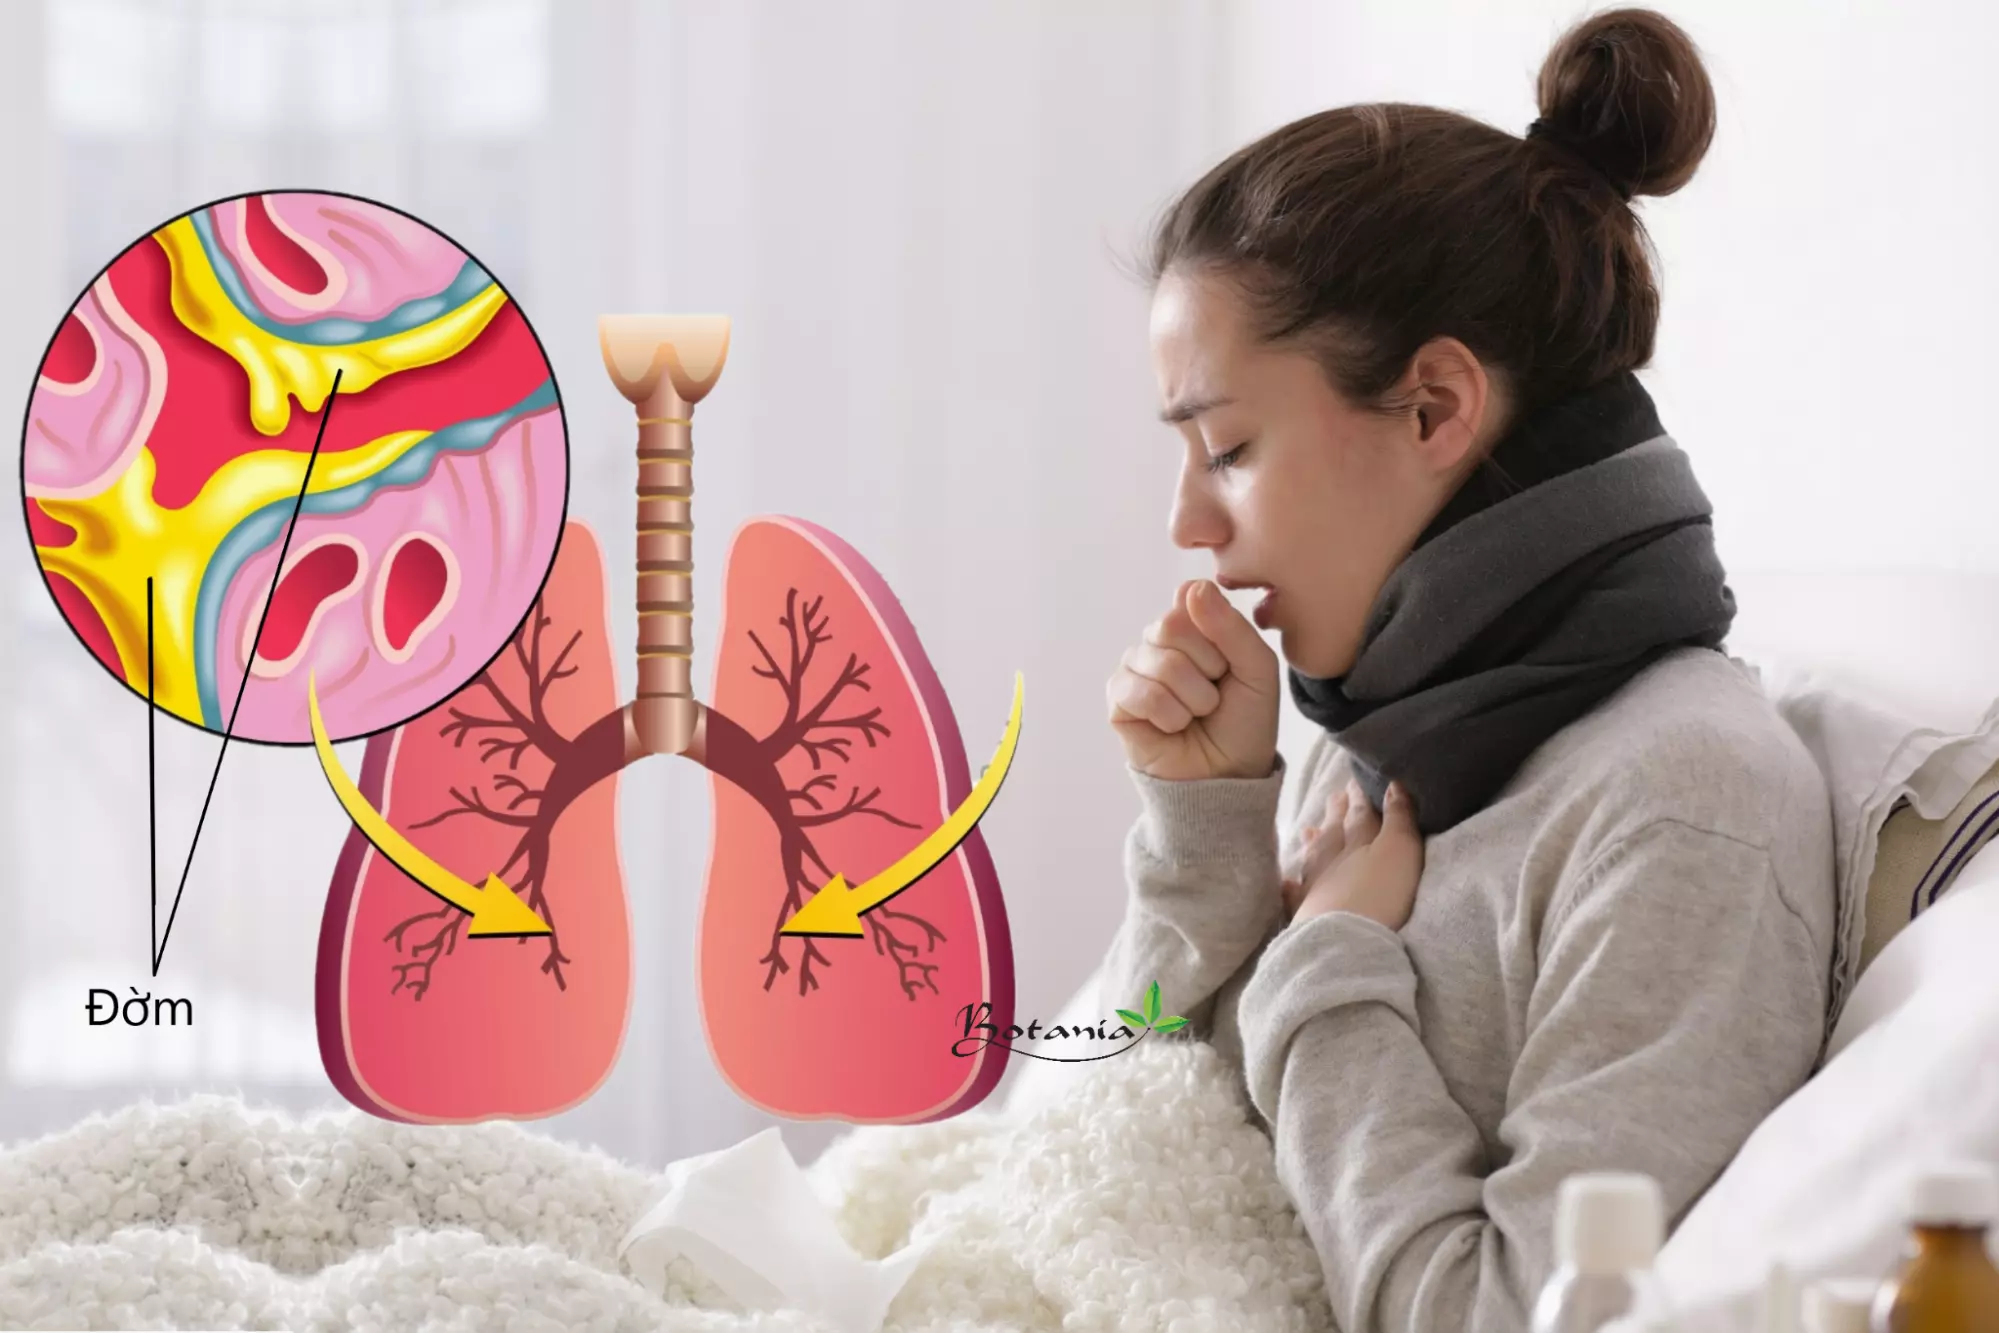 Cập nhật kiến thức về viêm phổi để việc điều trị trở lên hiệu quả